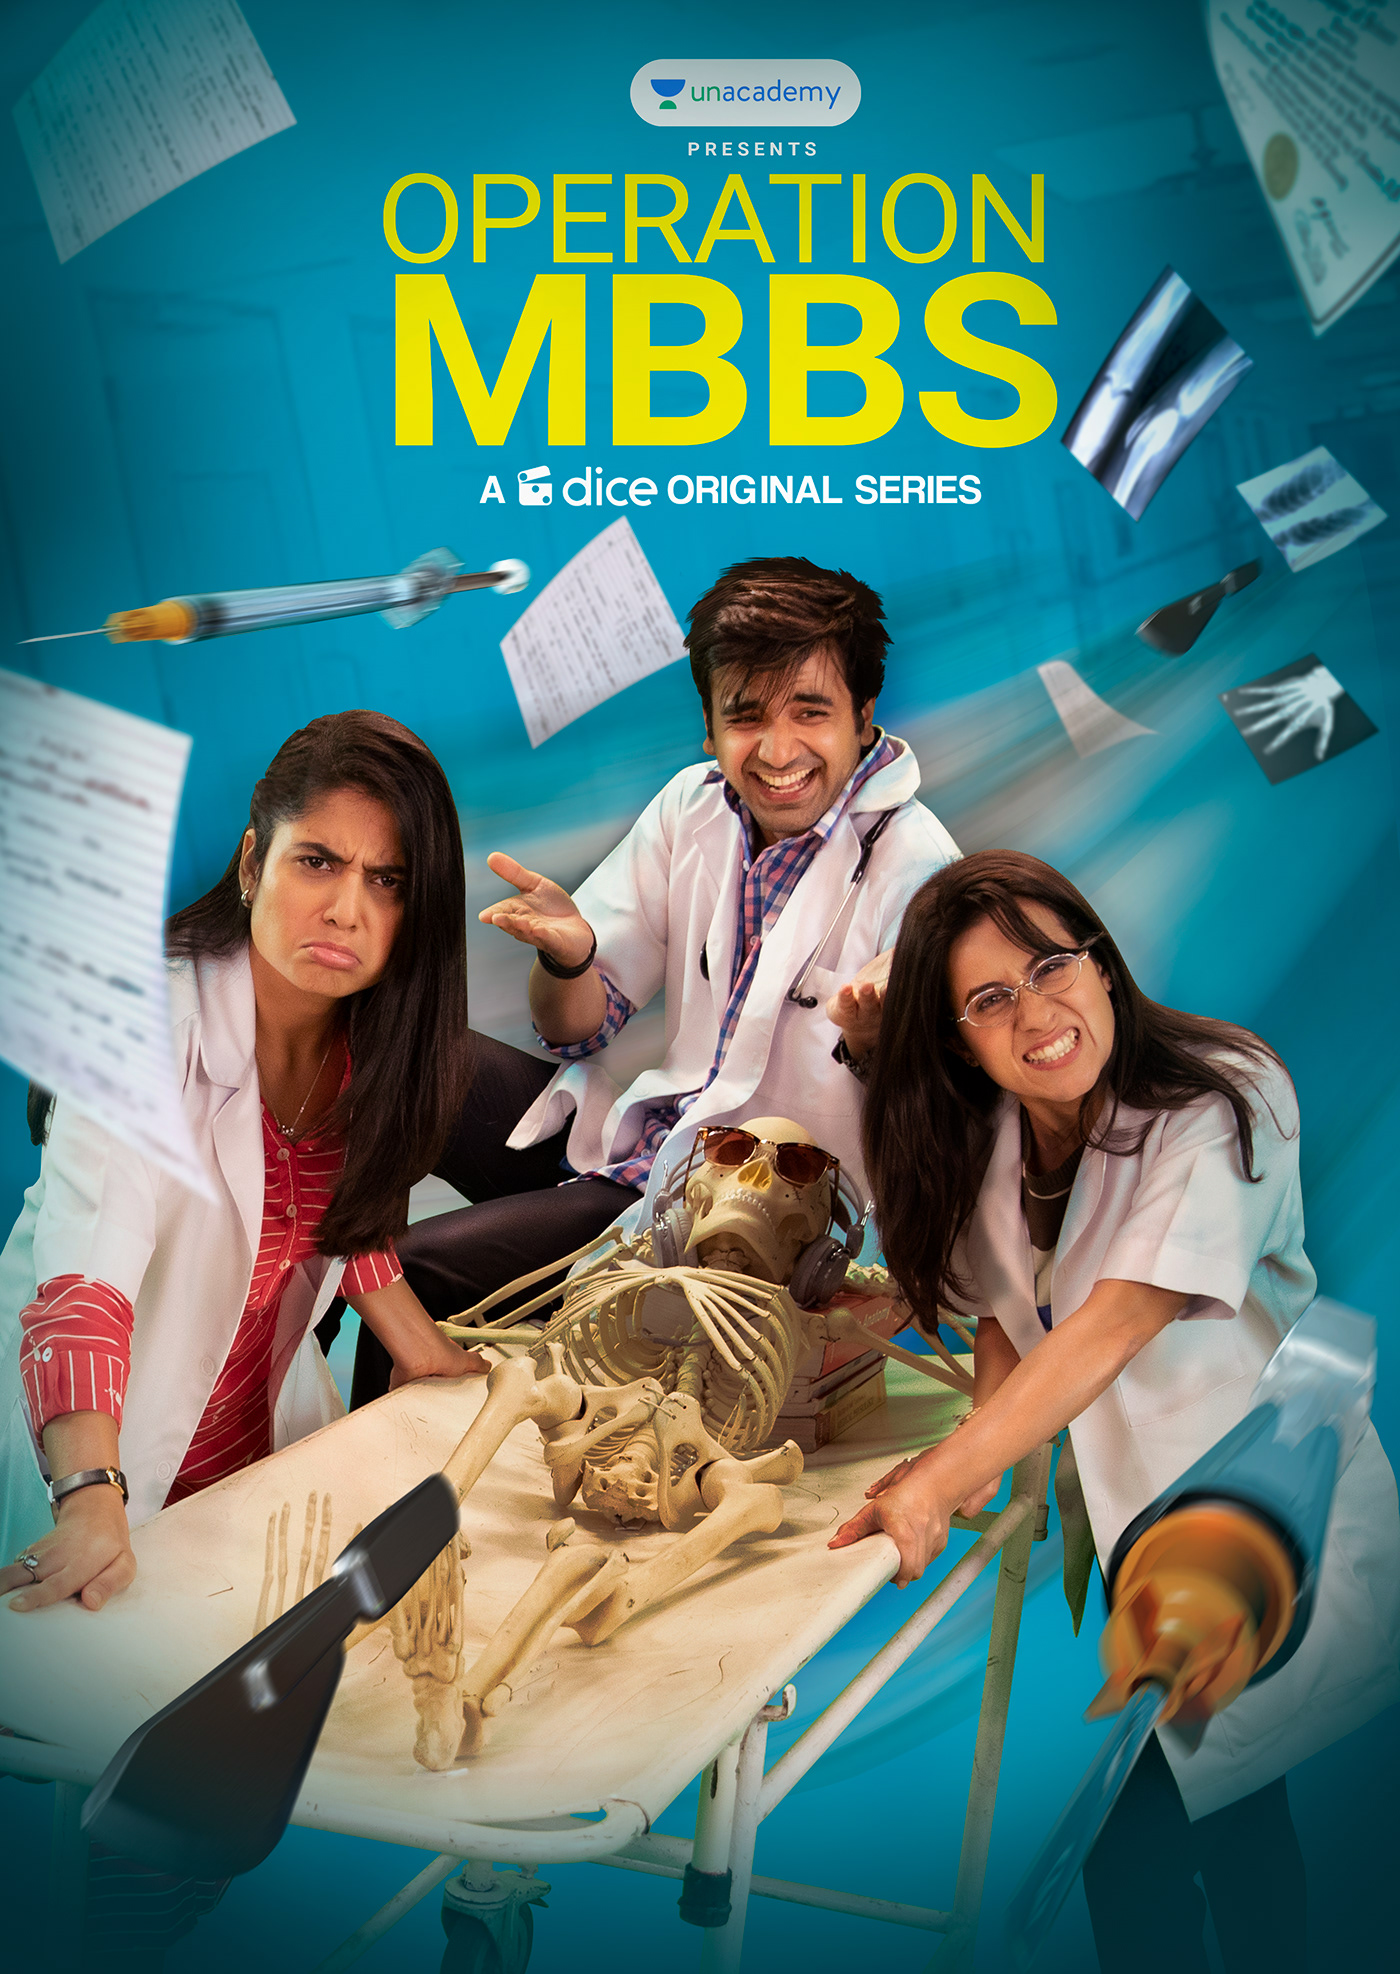 Operation MBBS Season 3 Release Date